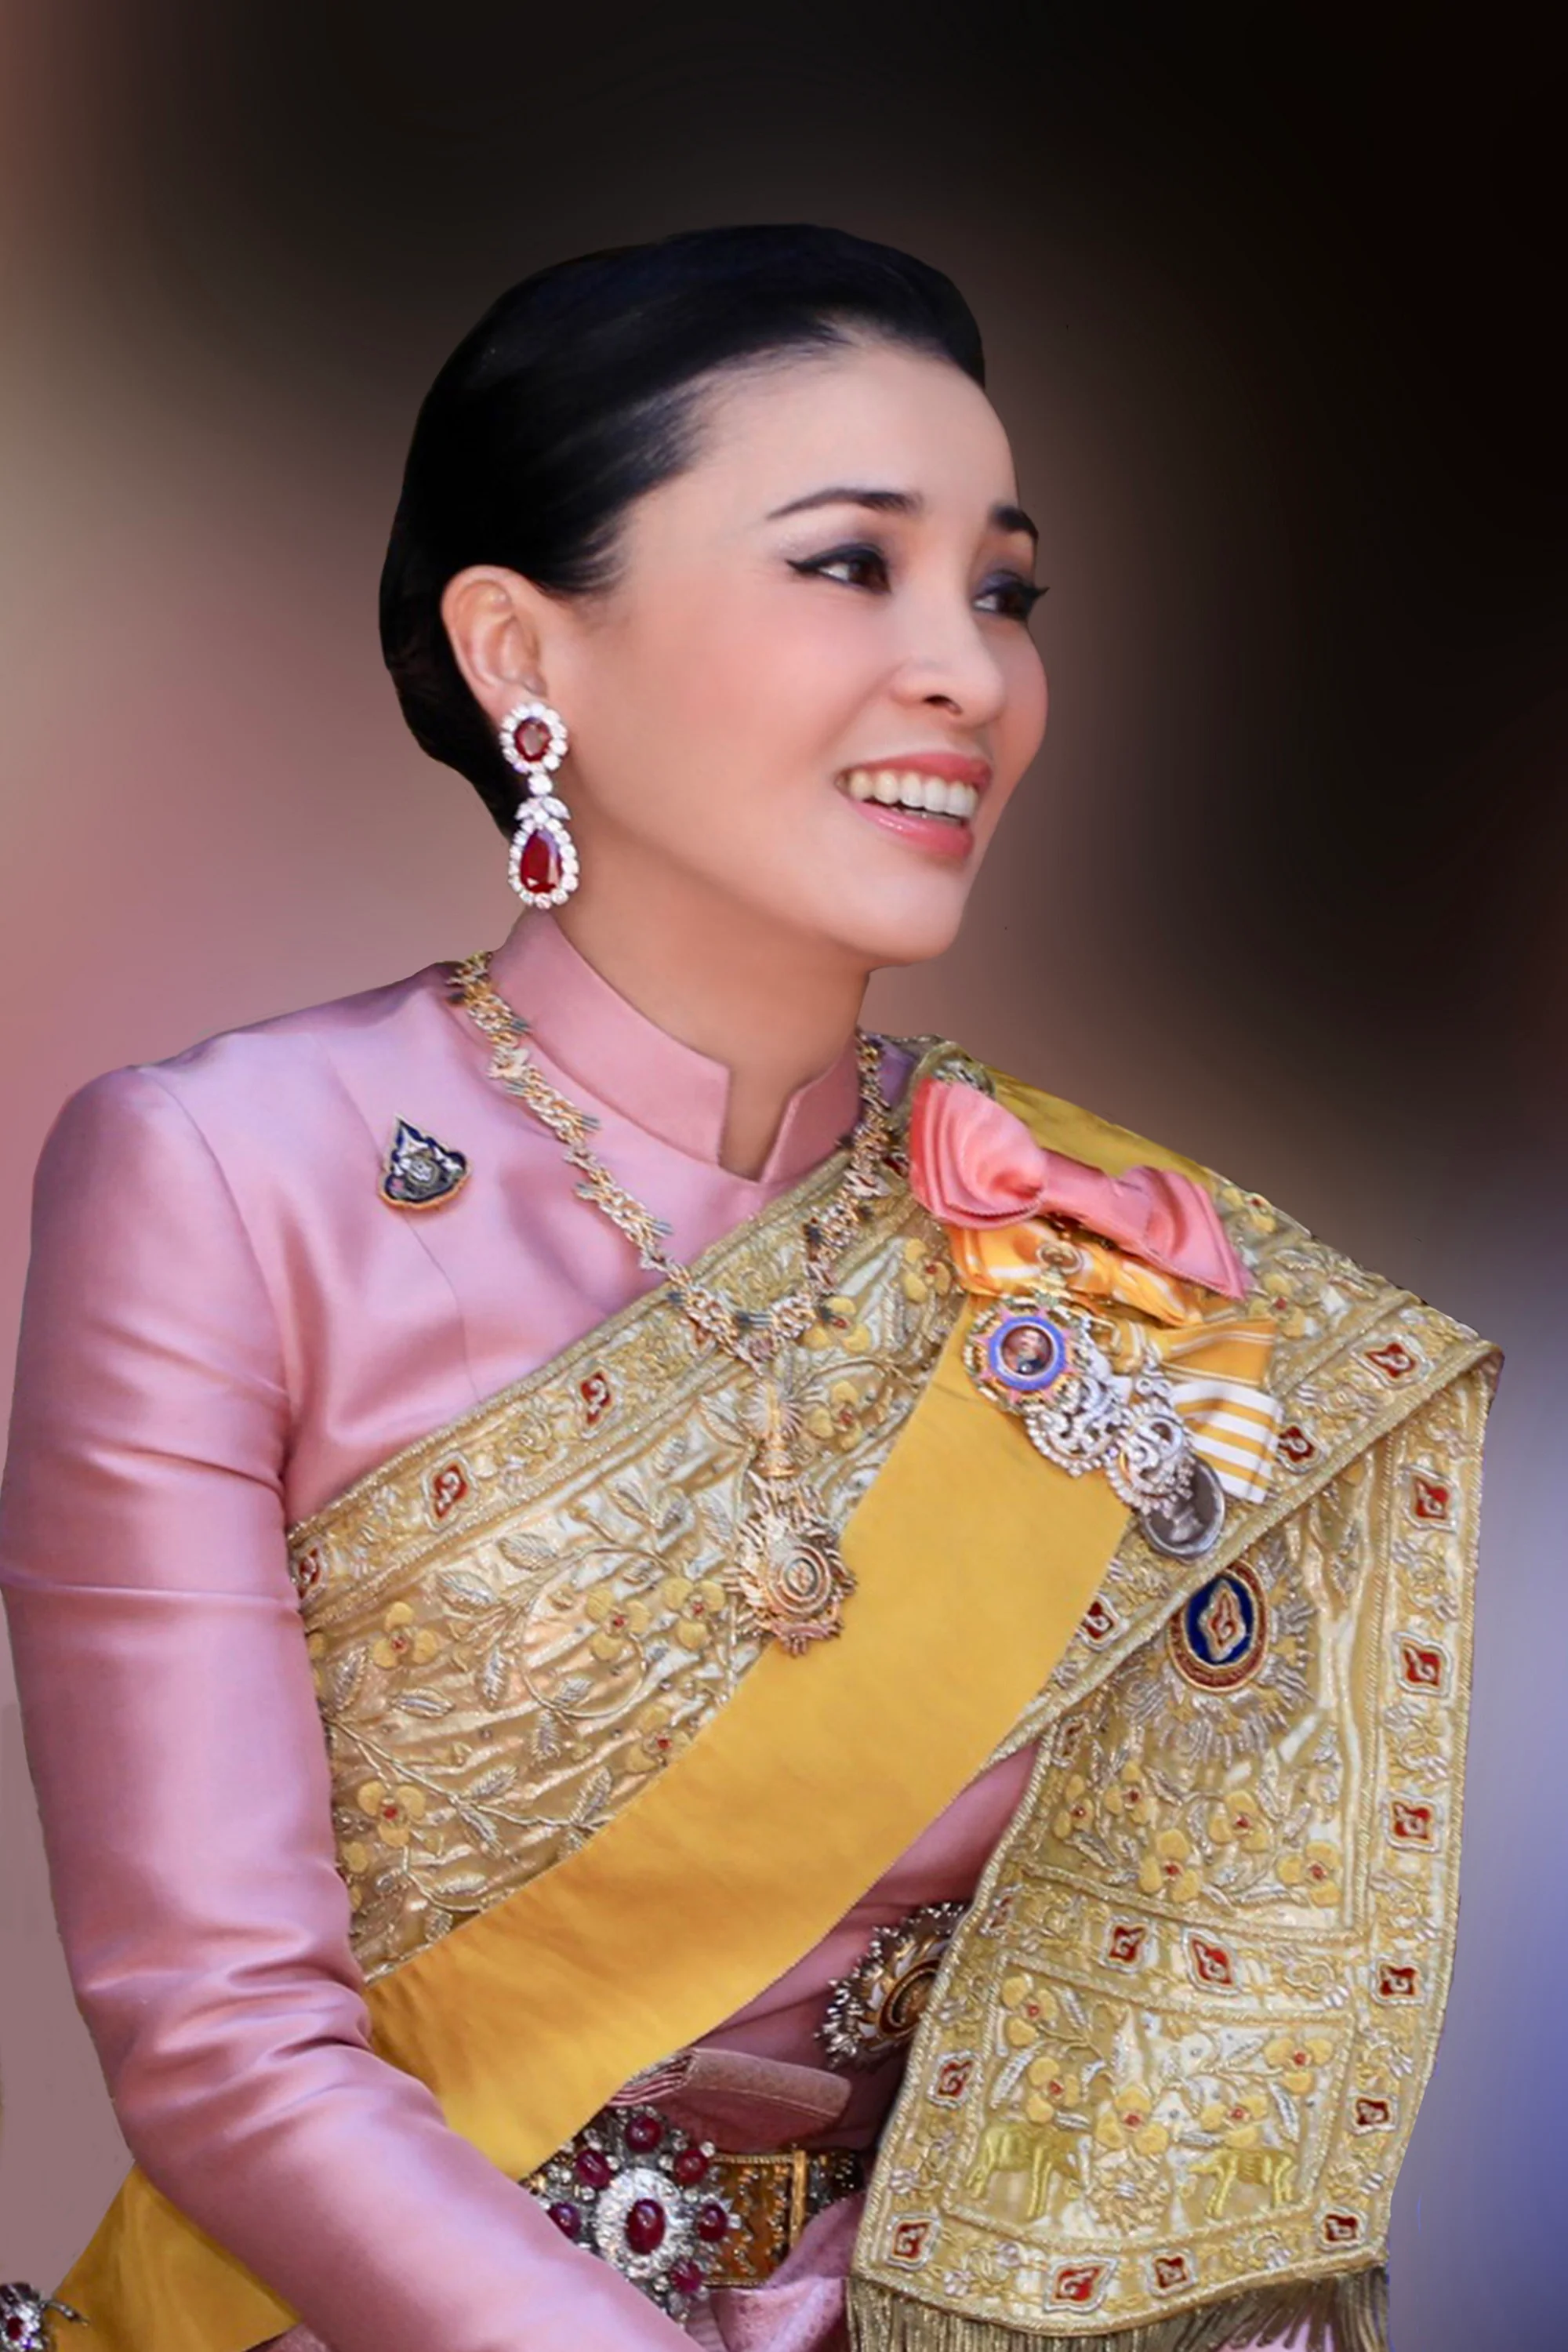 Появились первые официальные фото королевы Таиланда, и они не похожи на портрет Меган - фото 434520